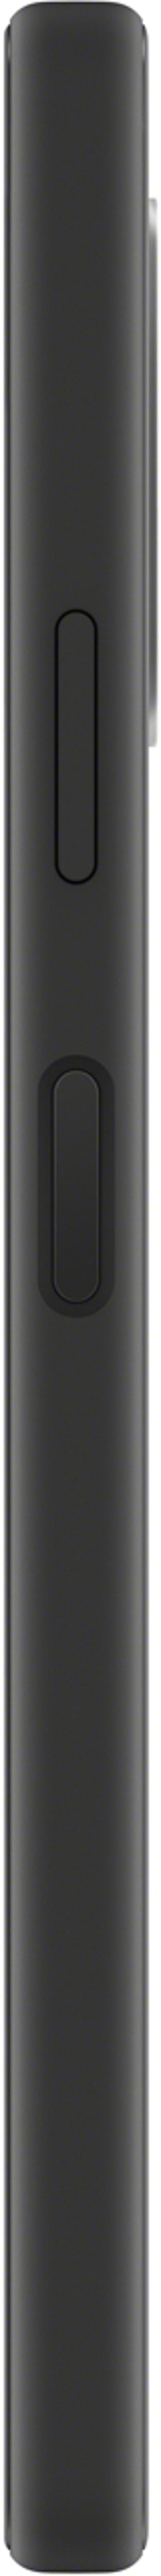 Sony XPERIA 10 IV 128GB Dual-SIM Sort